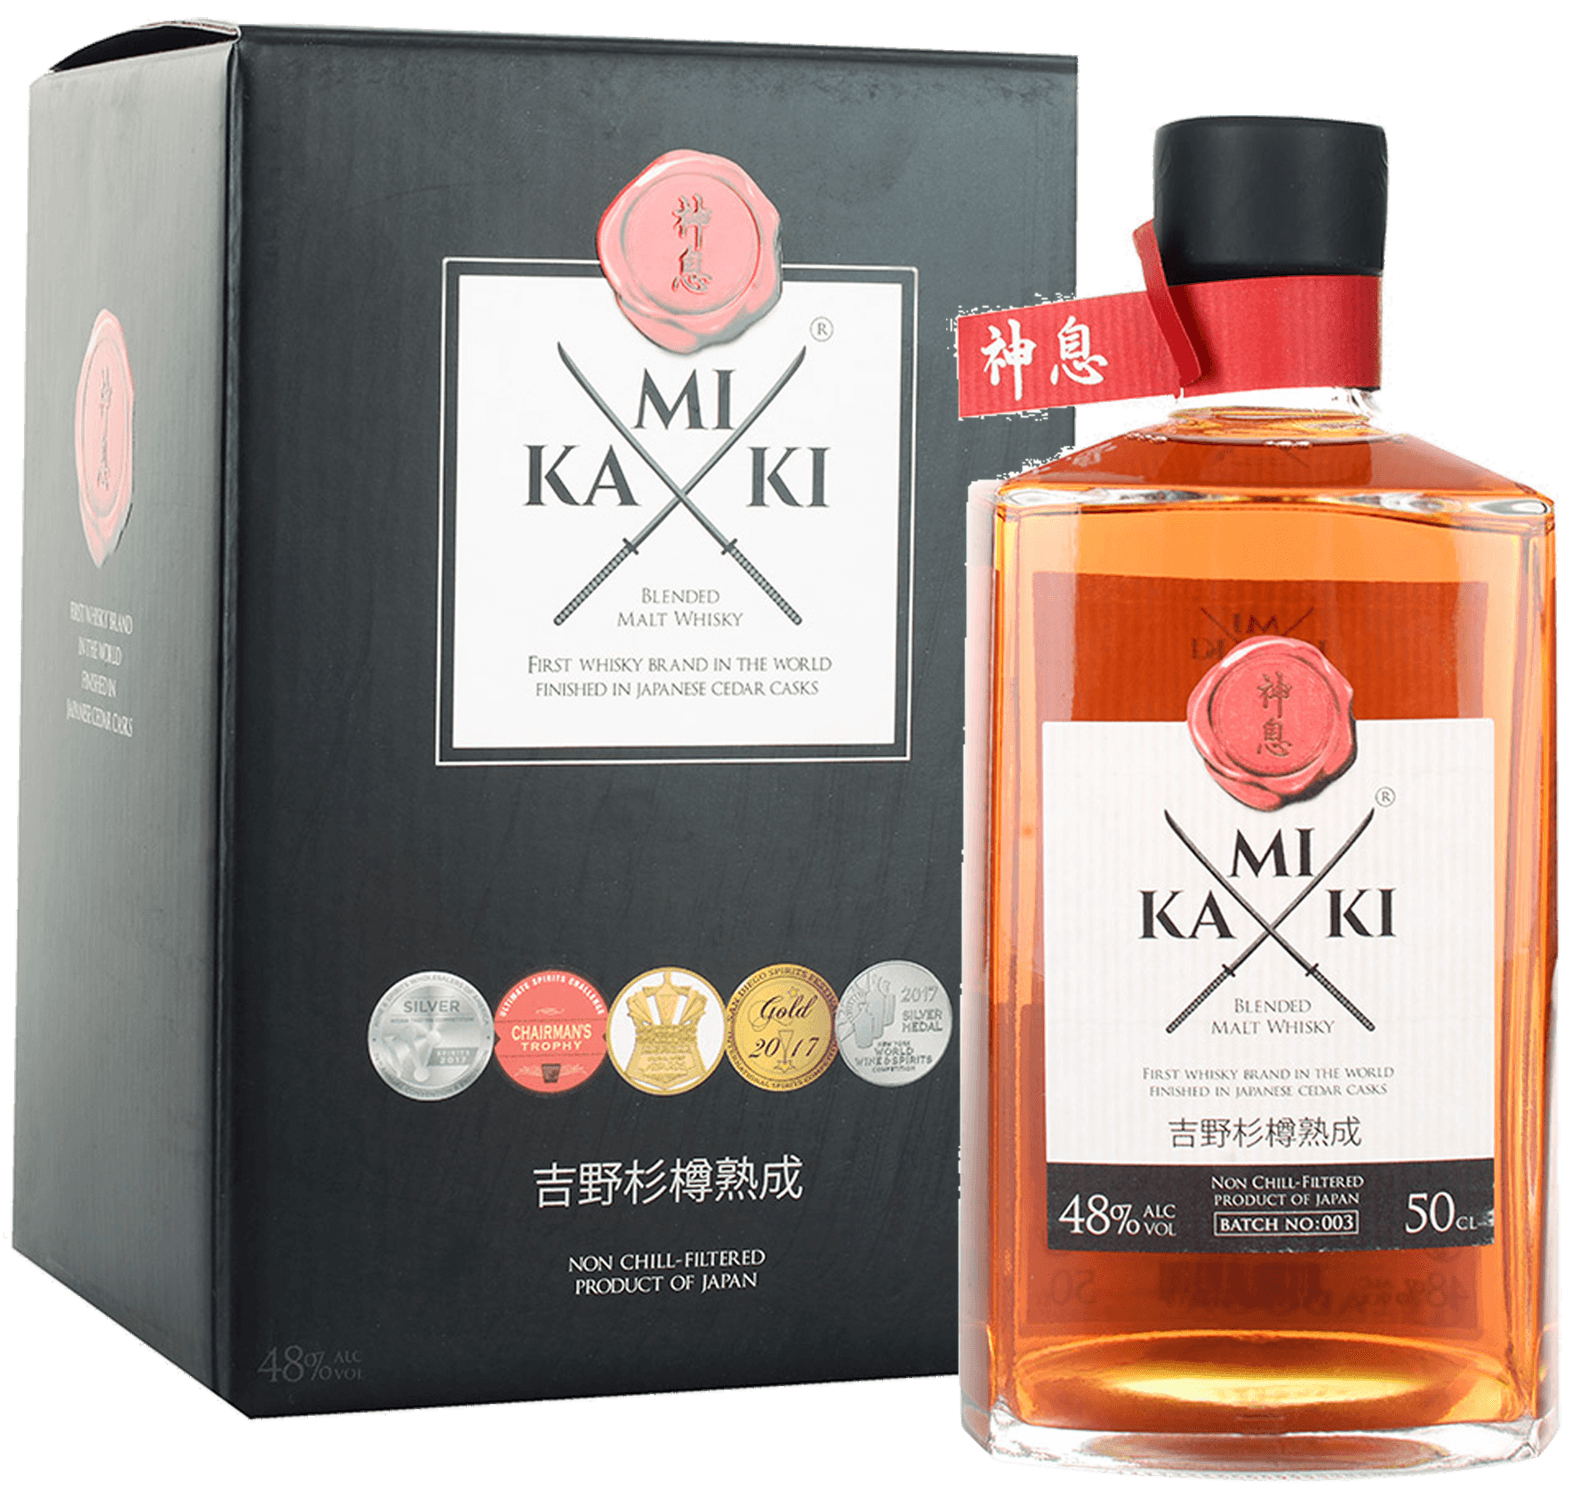 Kamiki Blended Malt Whisky (gift box)